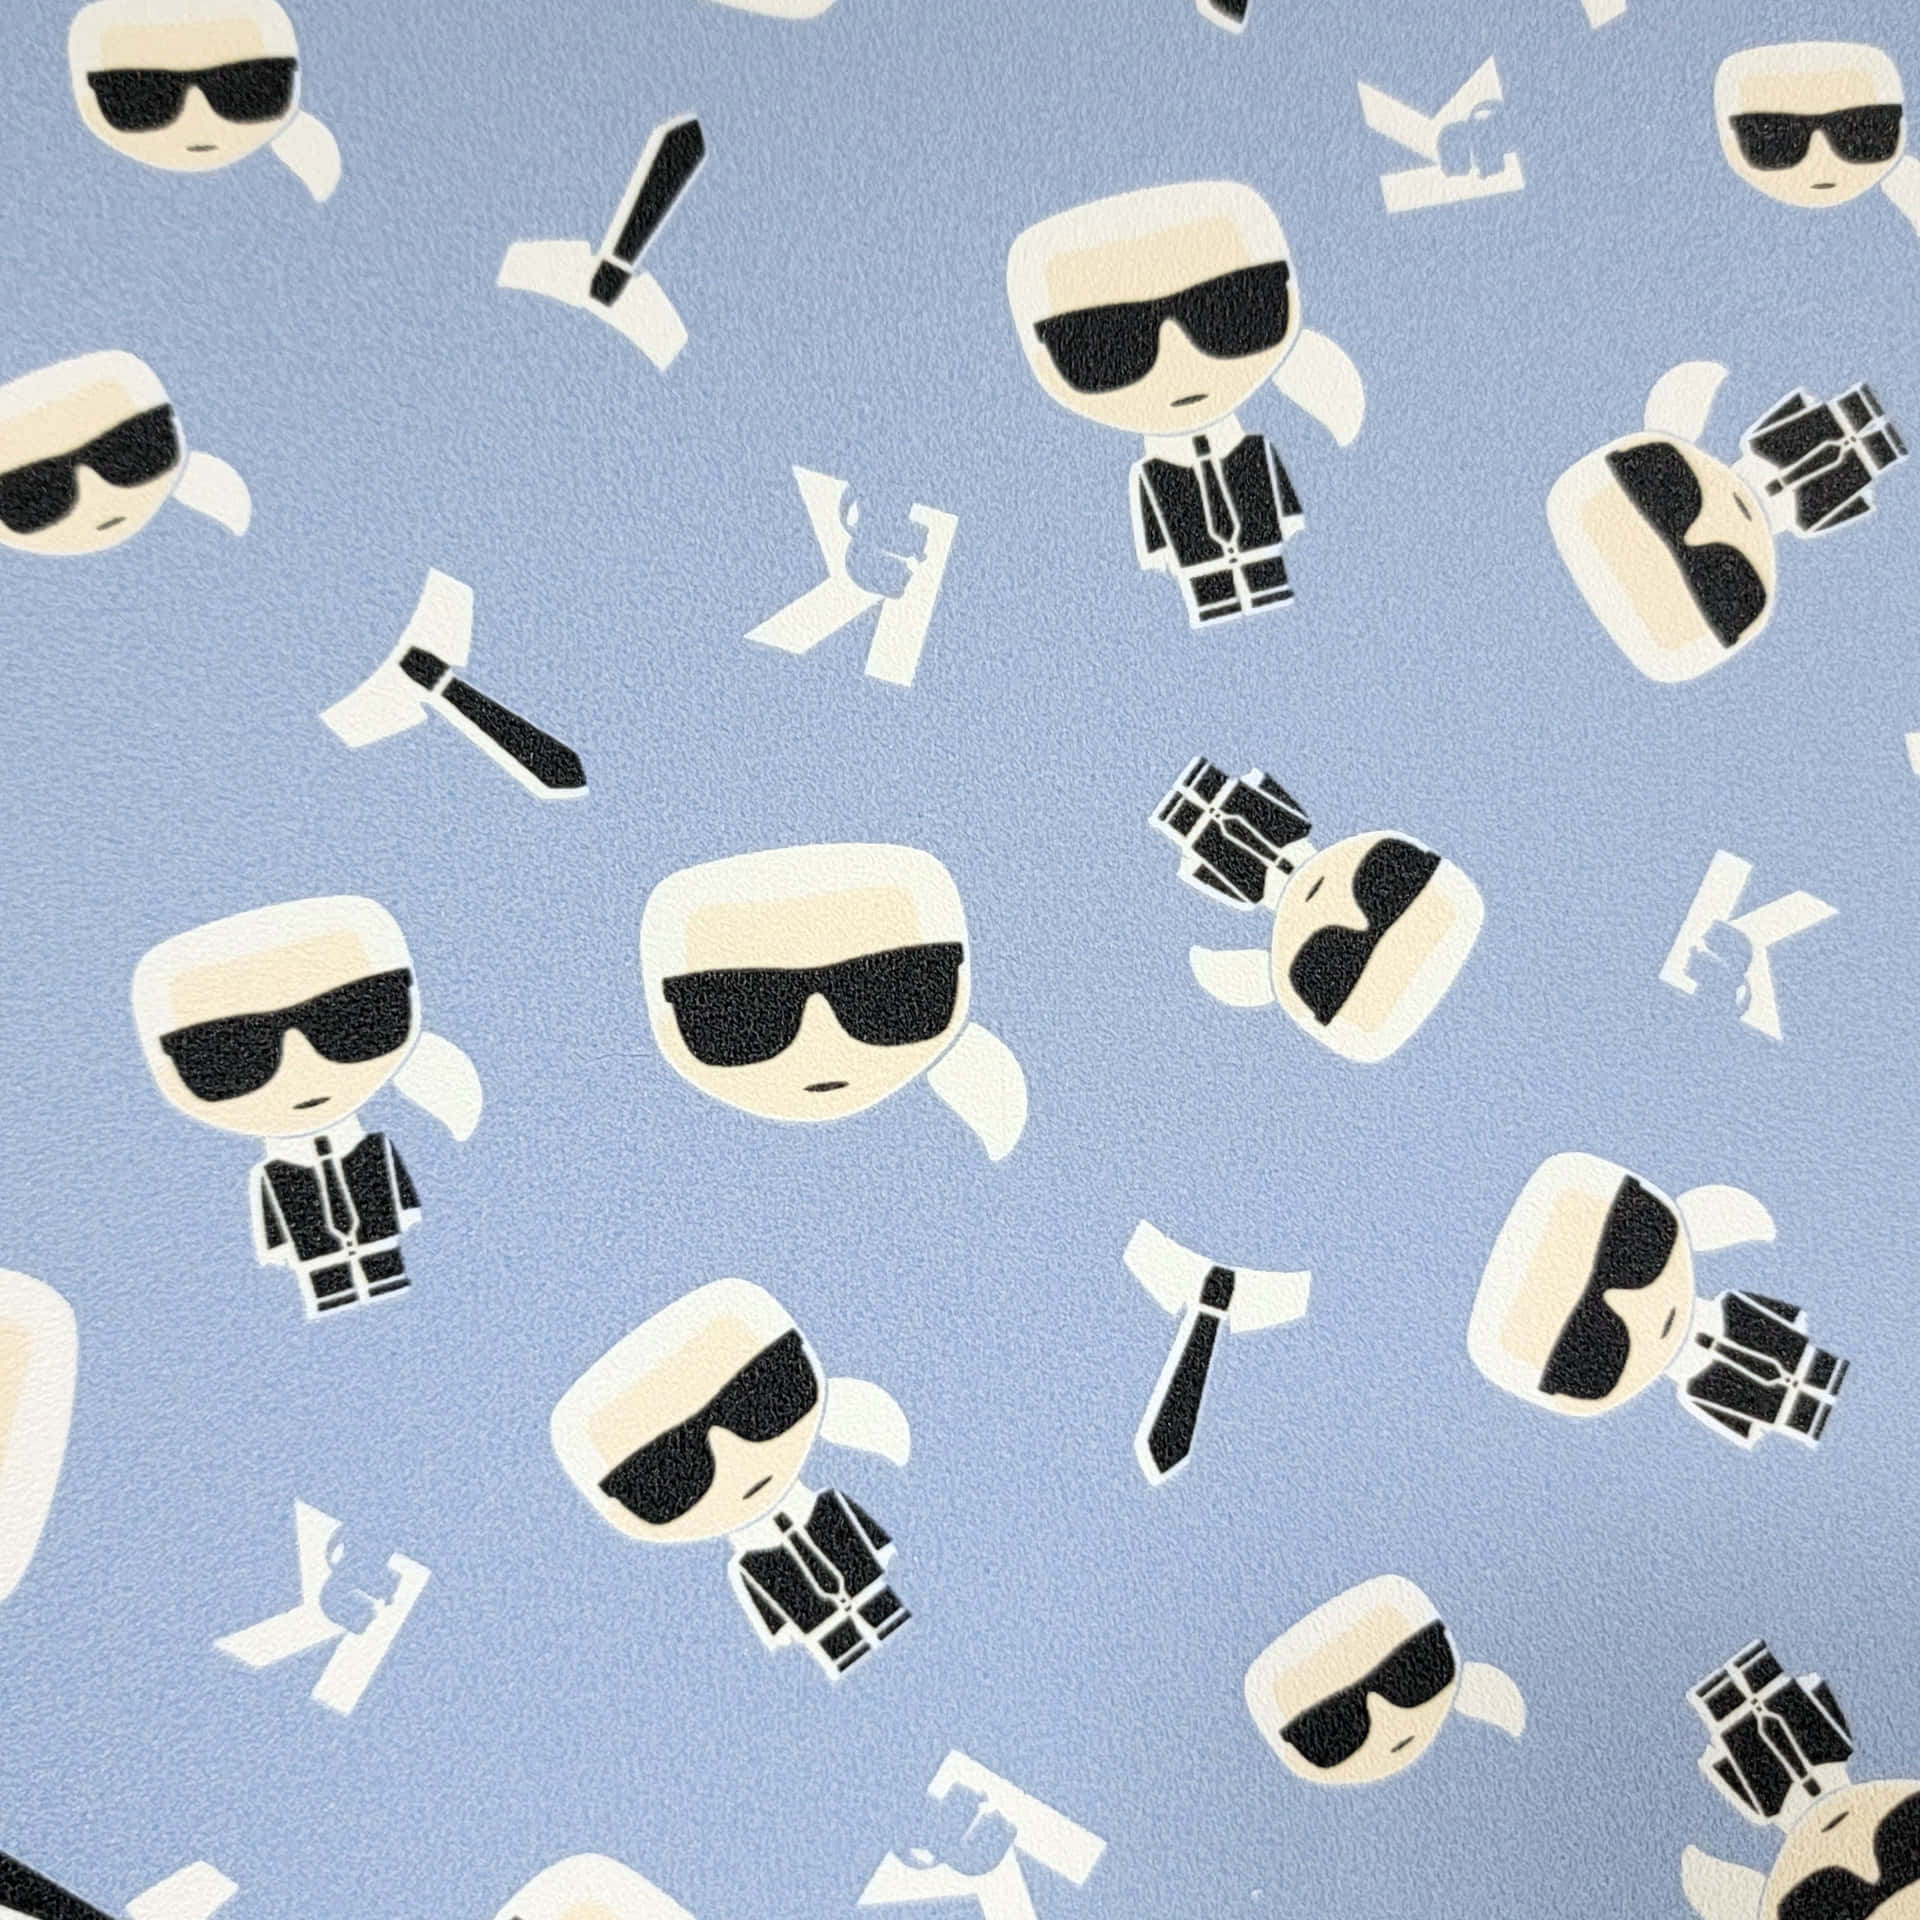 Legendary fashion designer Karl Lagerfeld Wallpaper